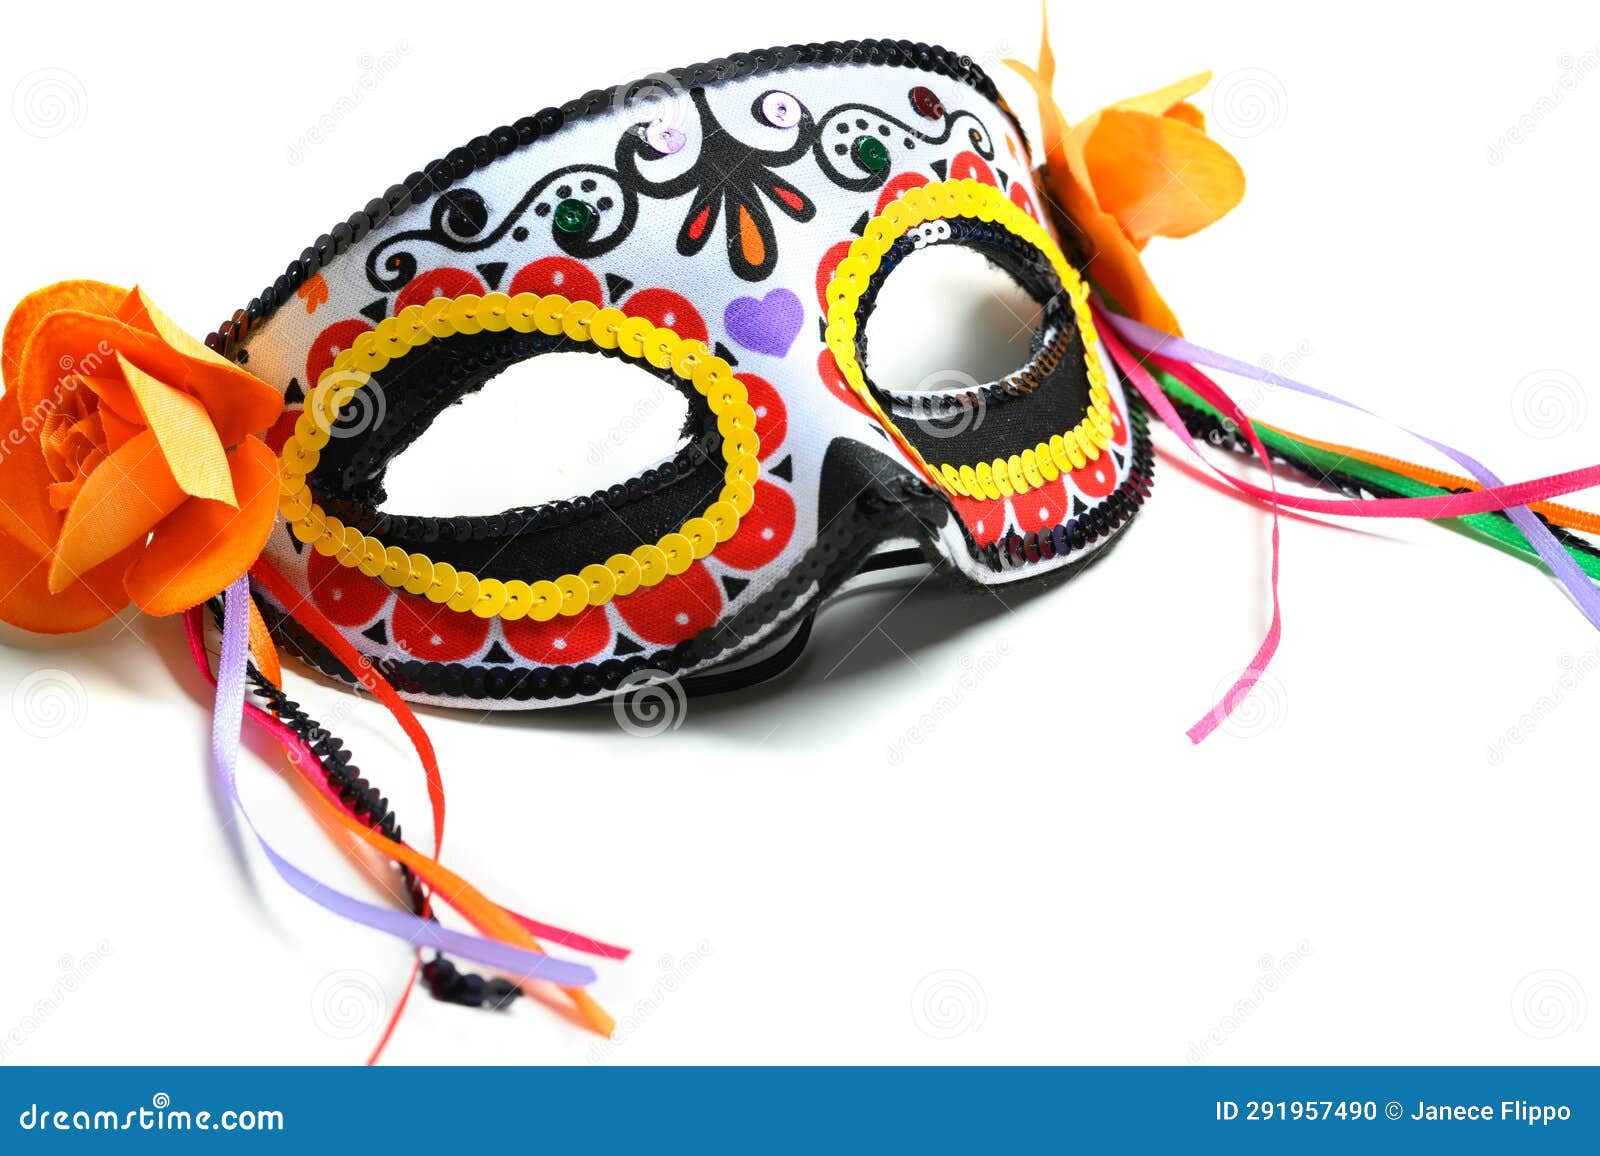 decorative day of the dead or dia de los muertos mask or halloween mask. calaveras or calaca